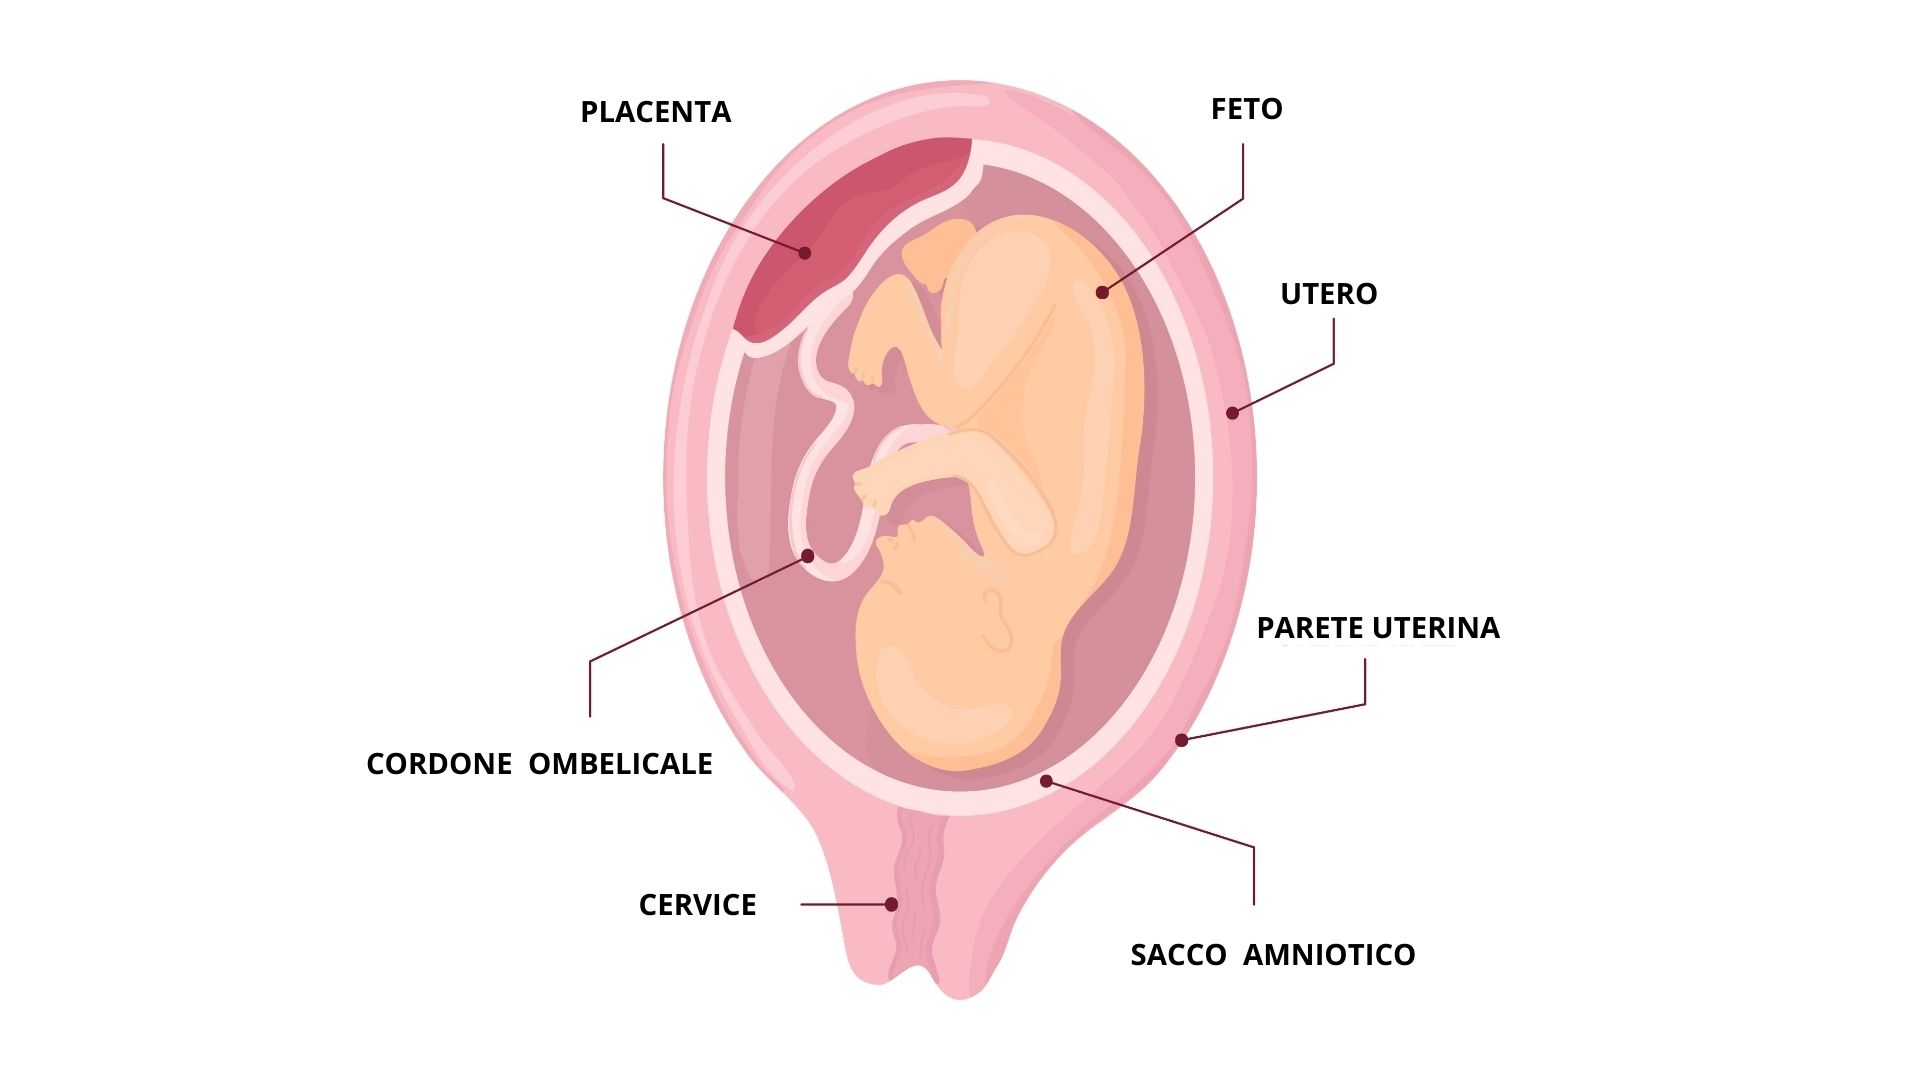 Immagine schematica che illustra la posizione del feto e della placenta.